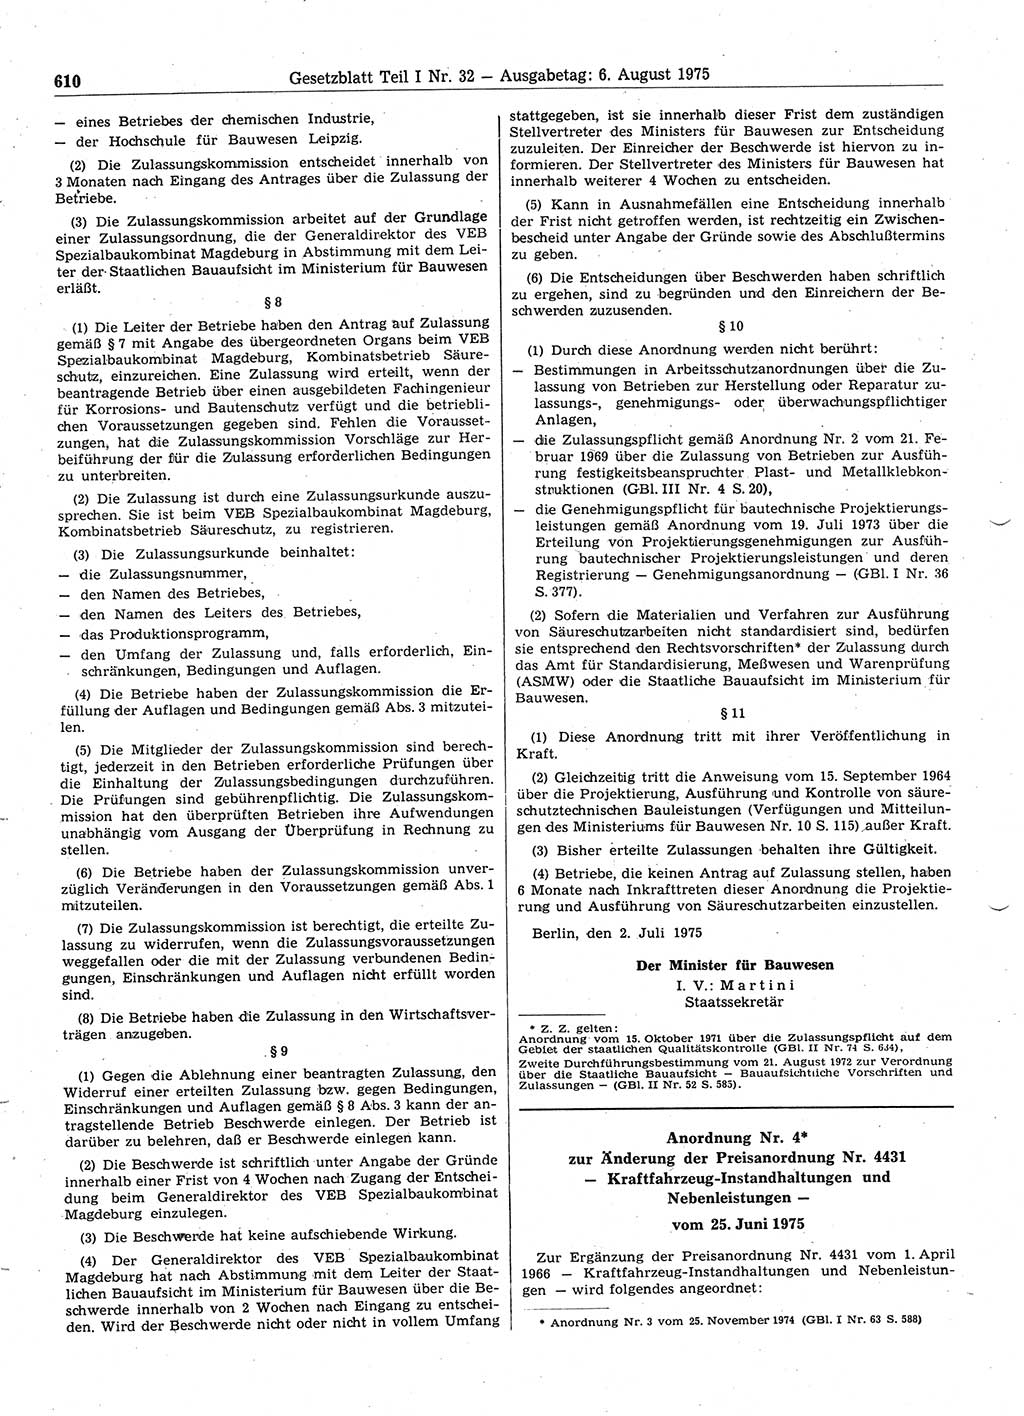 Gesetzblatt (GBl.) der Deutschen Demokratischen Republik (DDR) Teil Ⅰ 1975, Seite 610 (GBl. DDR Ⅰ 1975, S. 610)